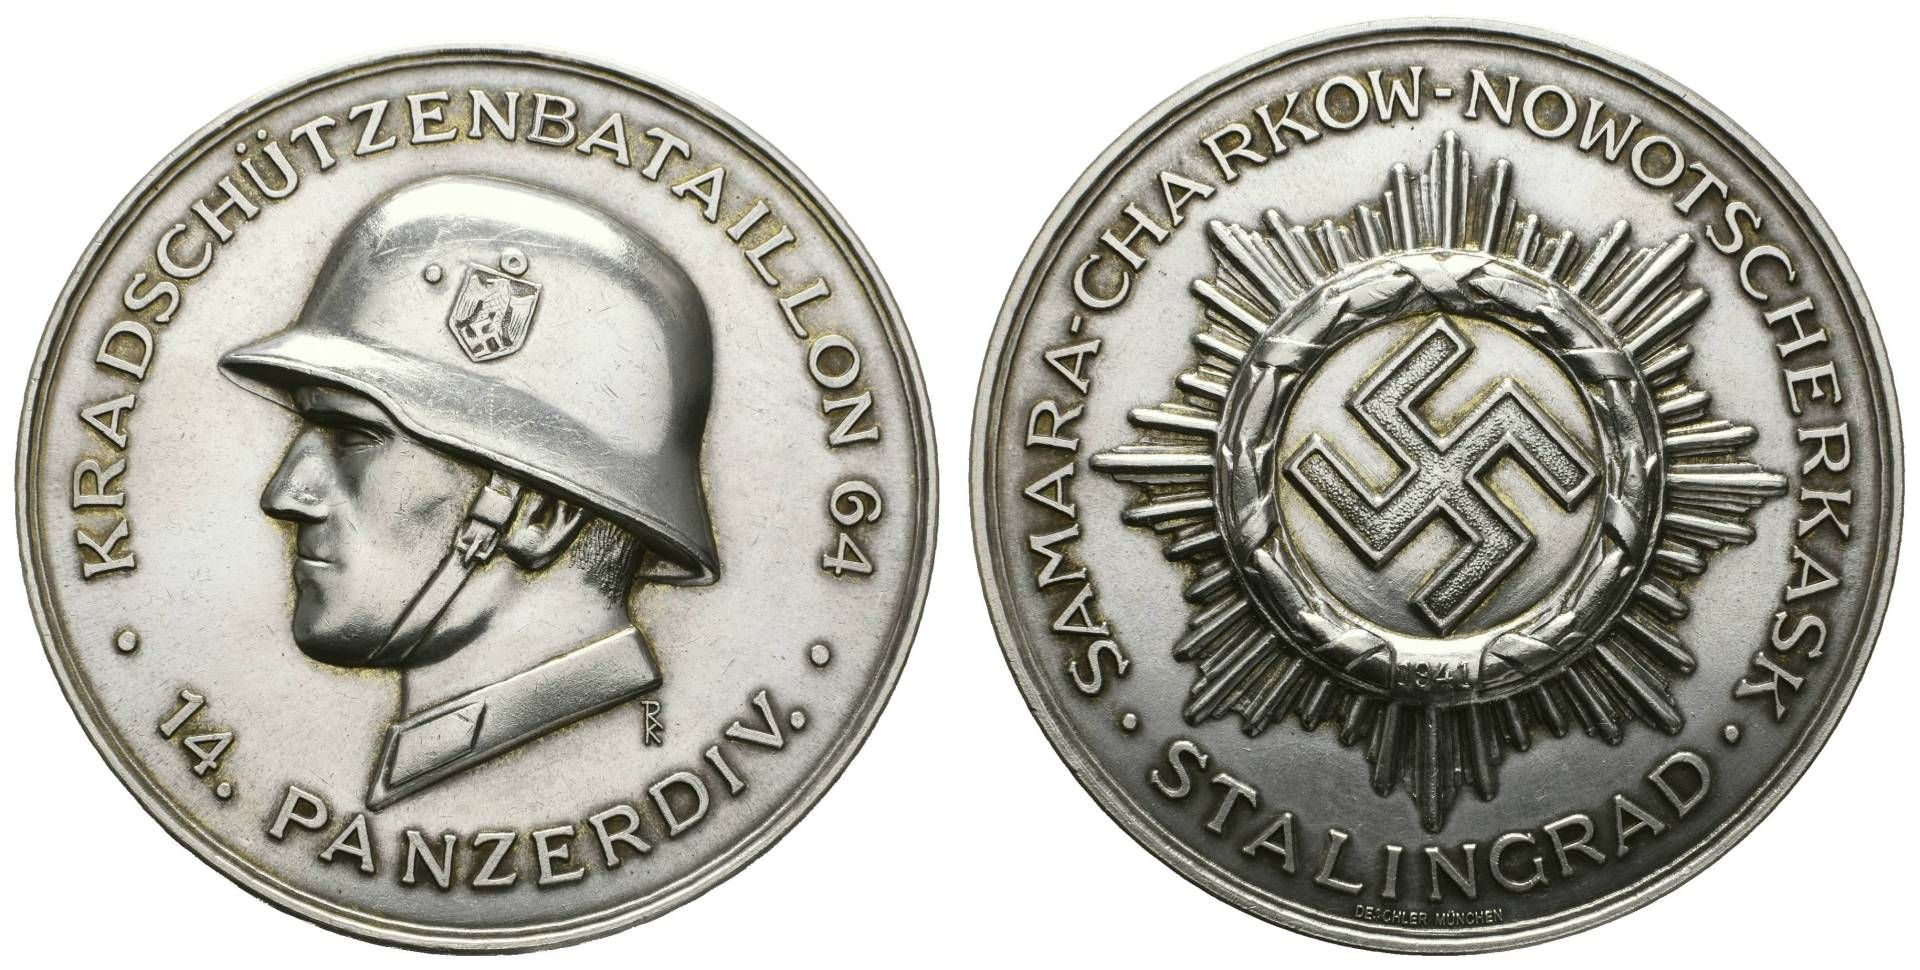 Versilberte Bronzemedaille (Dm 75 mm, 157 g), ohne Jahr, von Deschler München, auf die 14. Panzer-